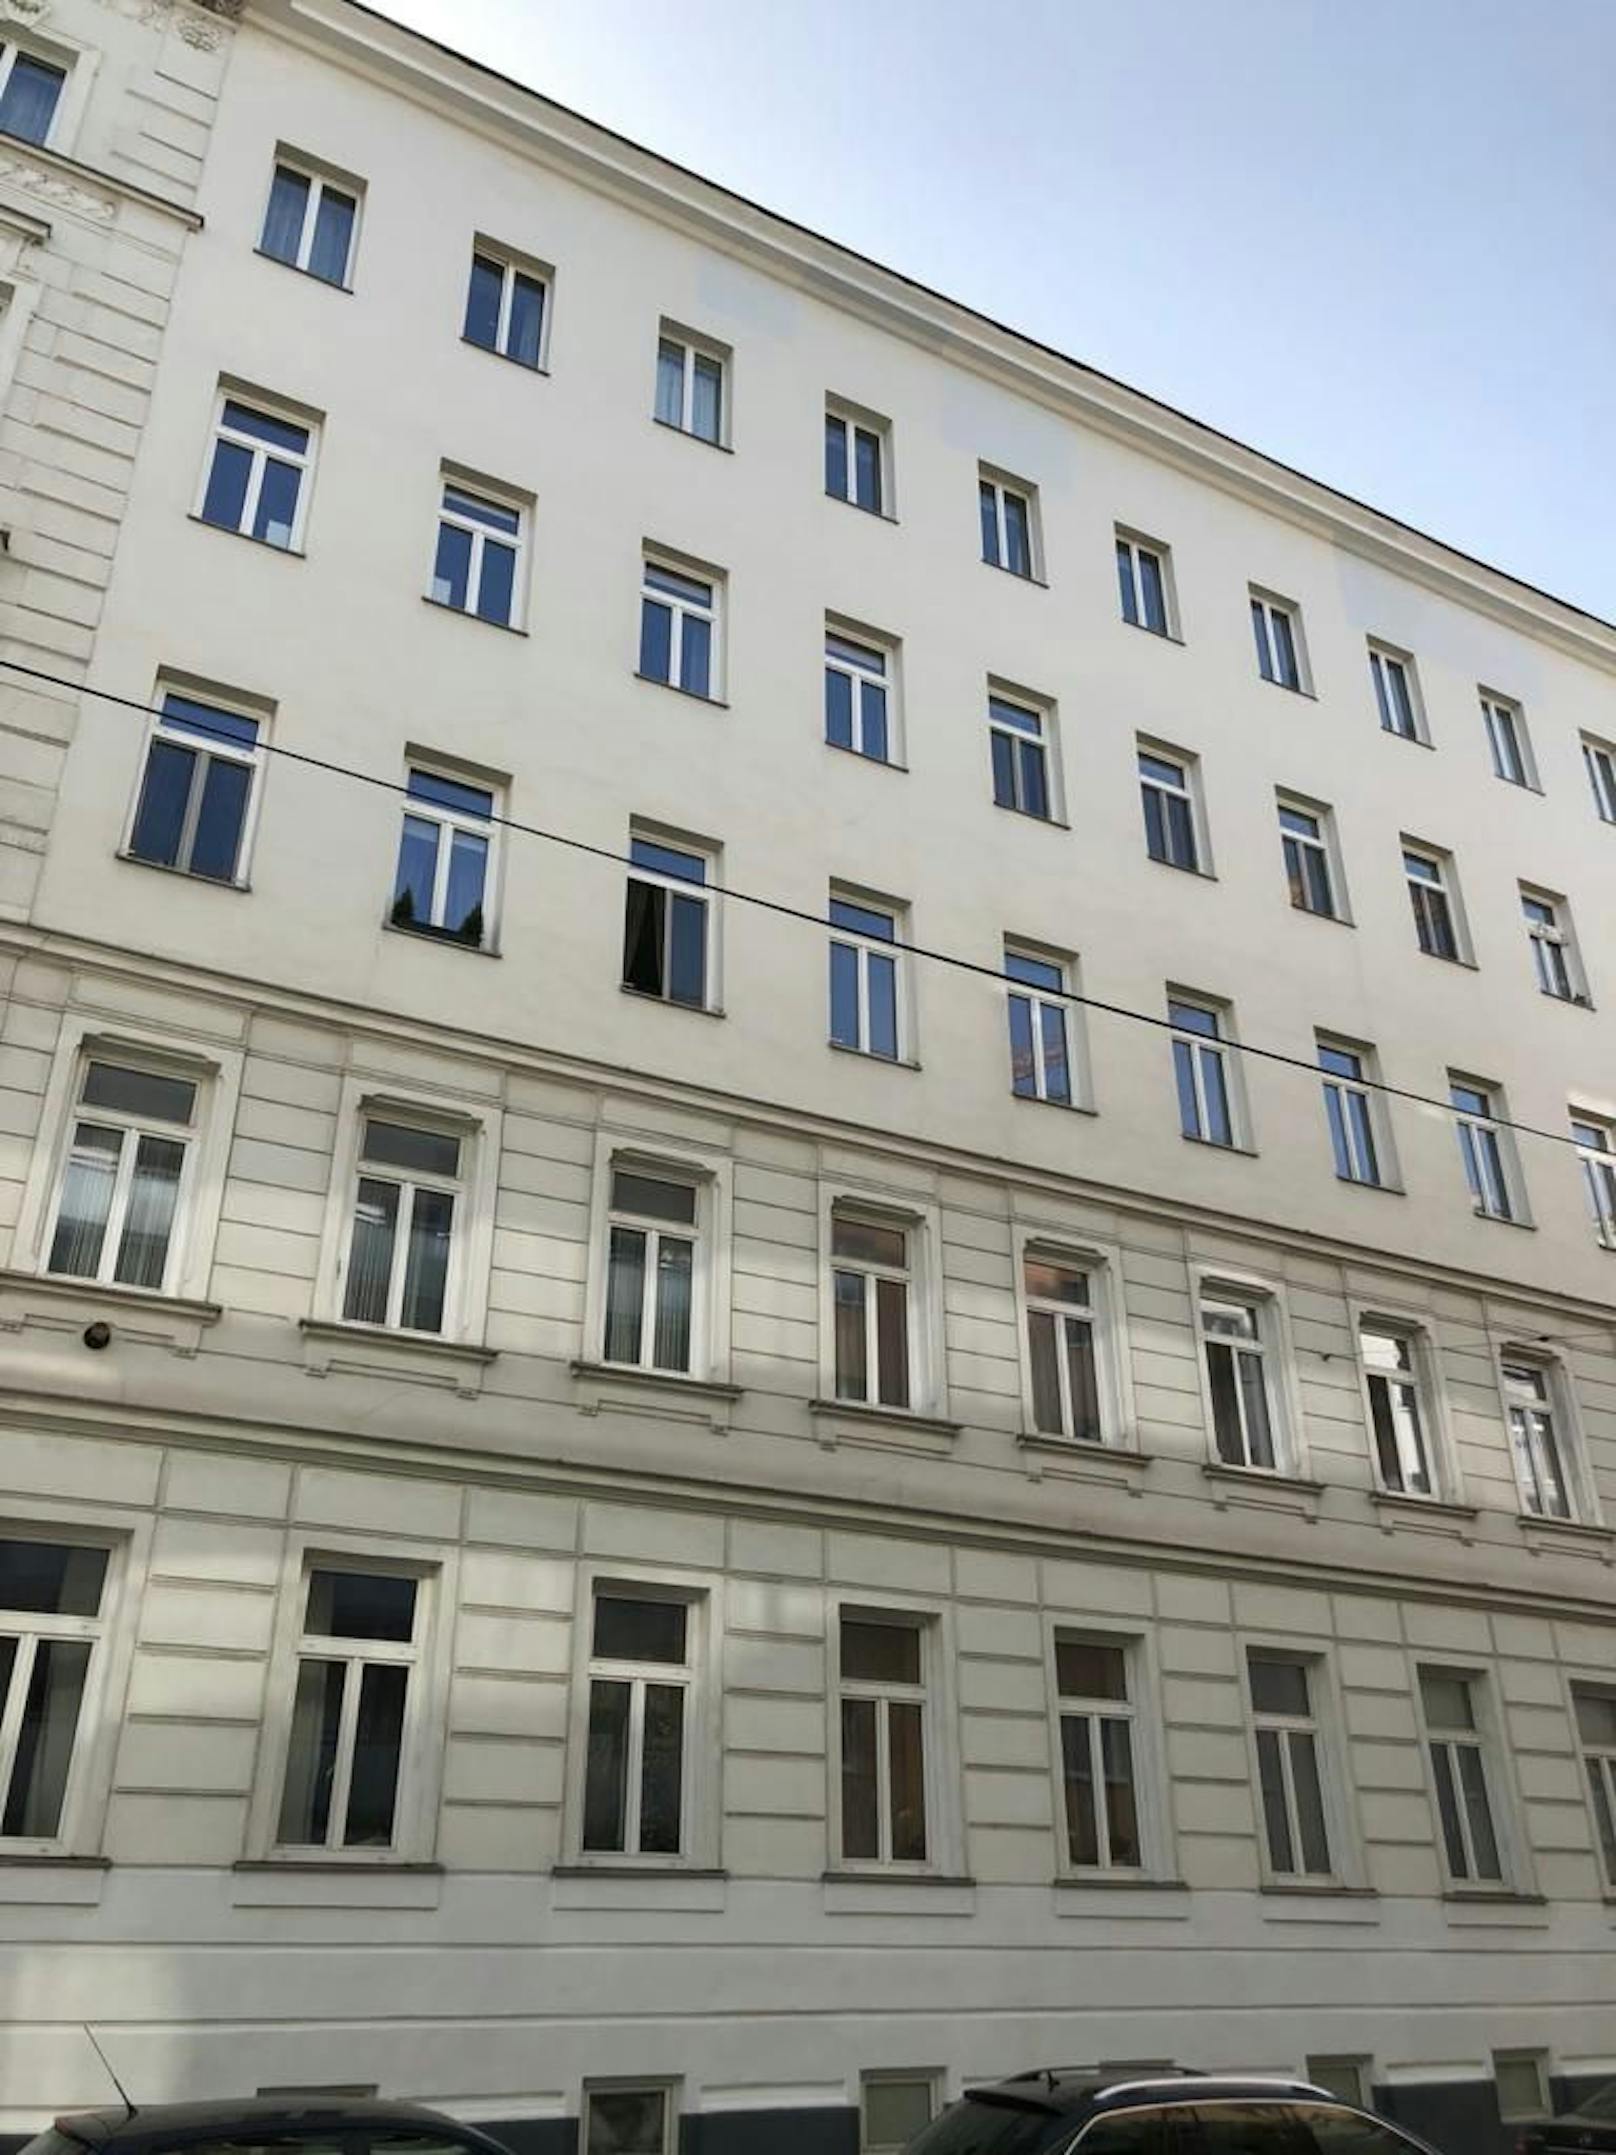 Die Bluttat ereignete sich in einer Wohnung in Wien-Favoriten.